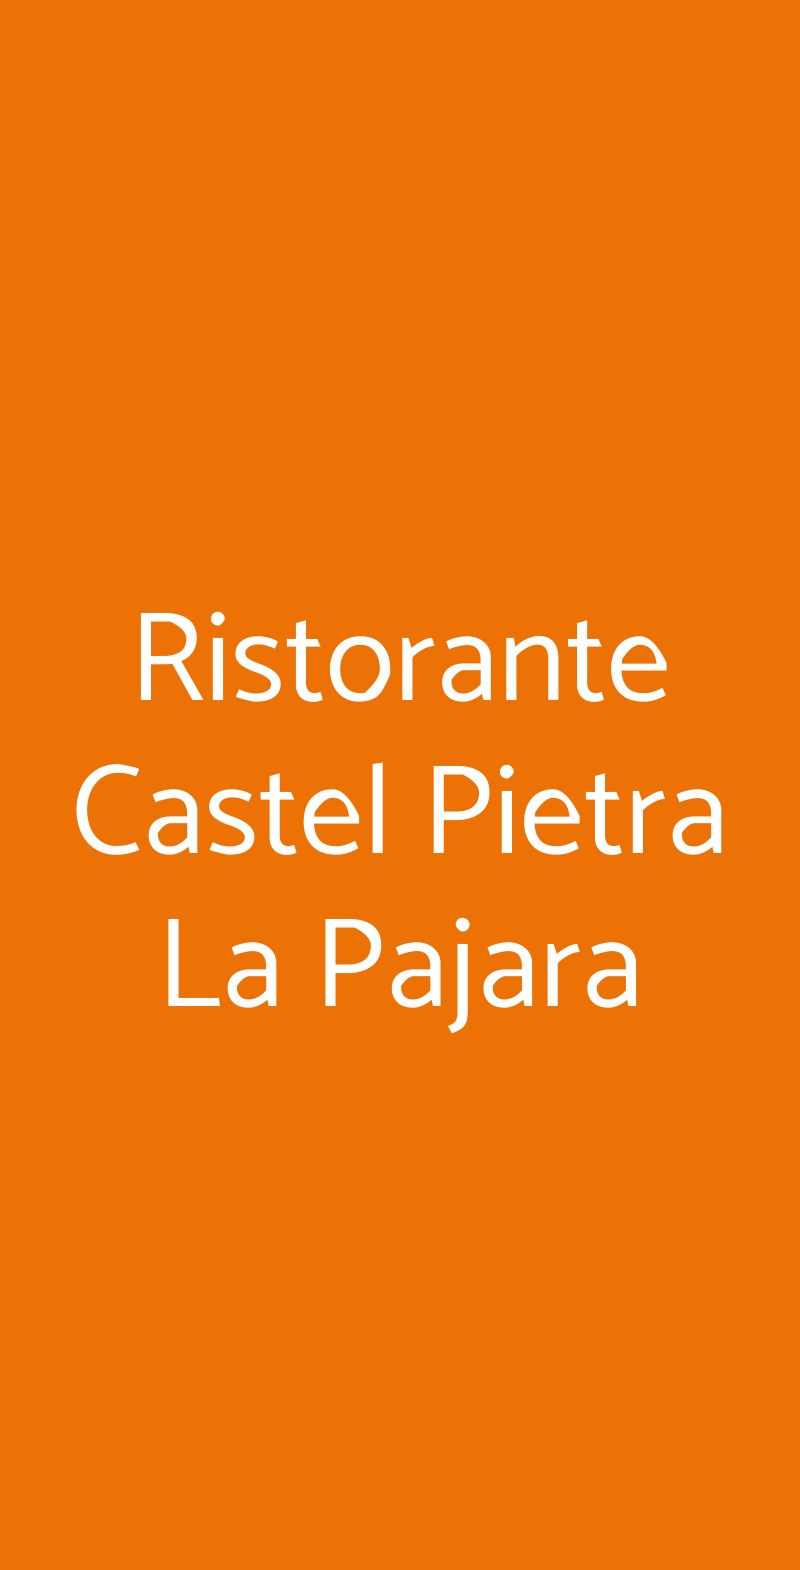 Ristorante Castel Pietra La Pajara Primiero San Martino di Castrozza menù 1 pagina